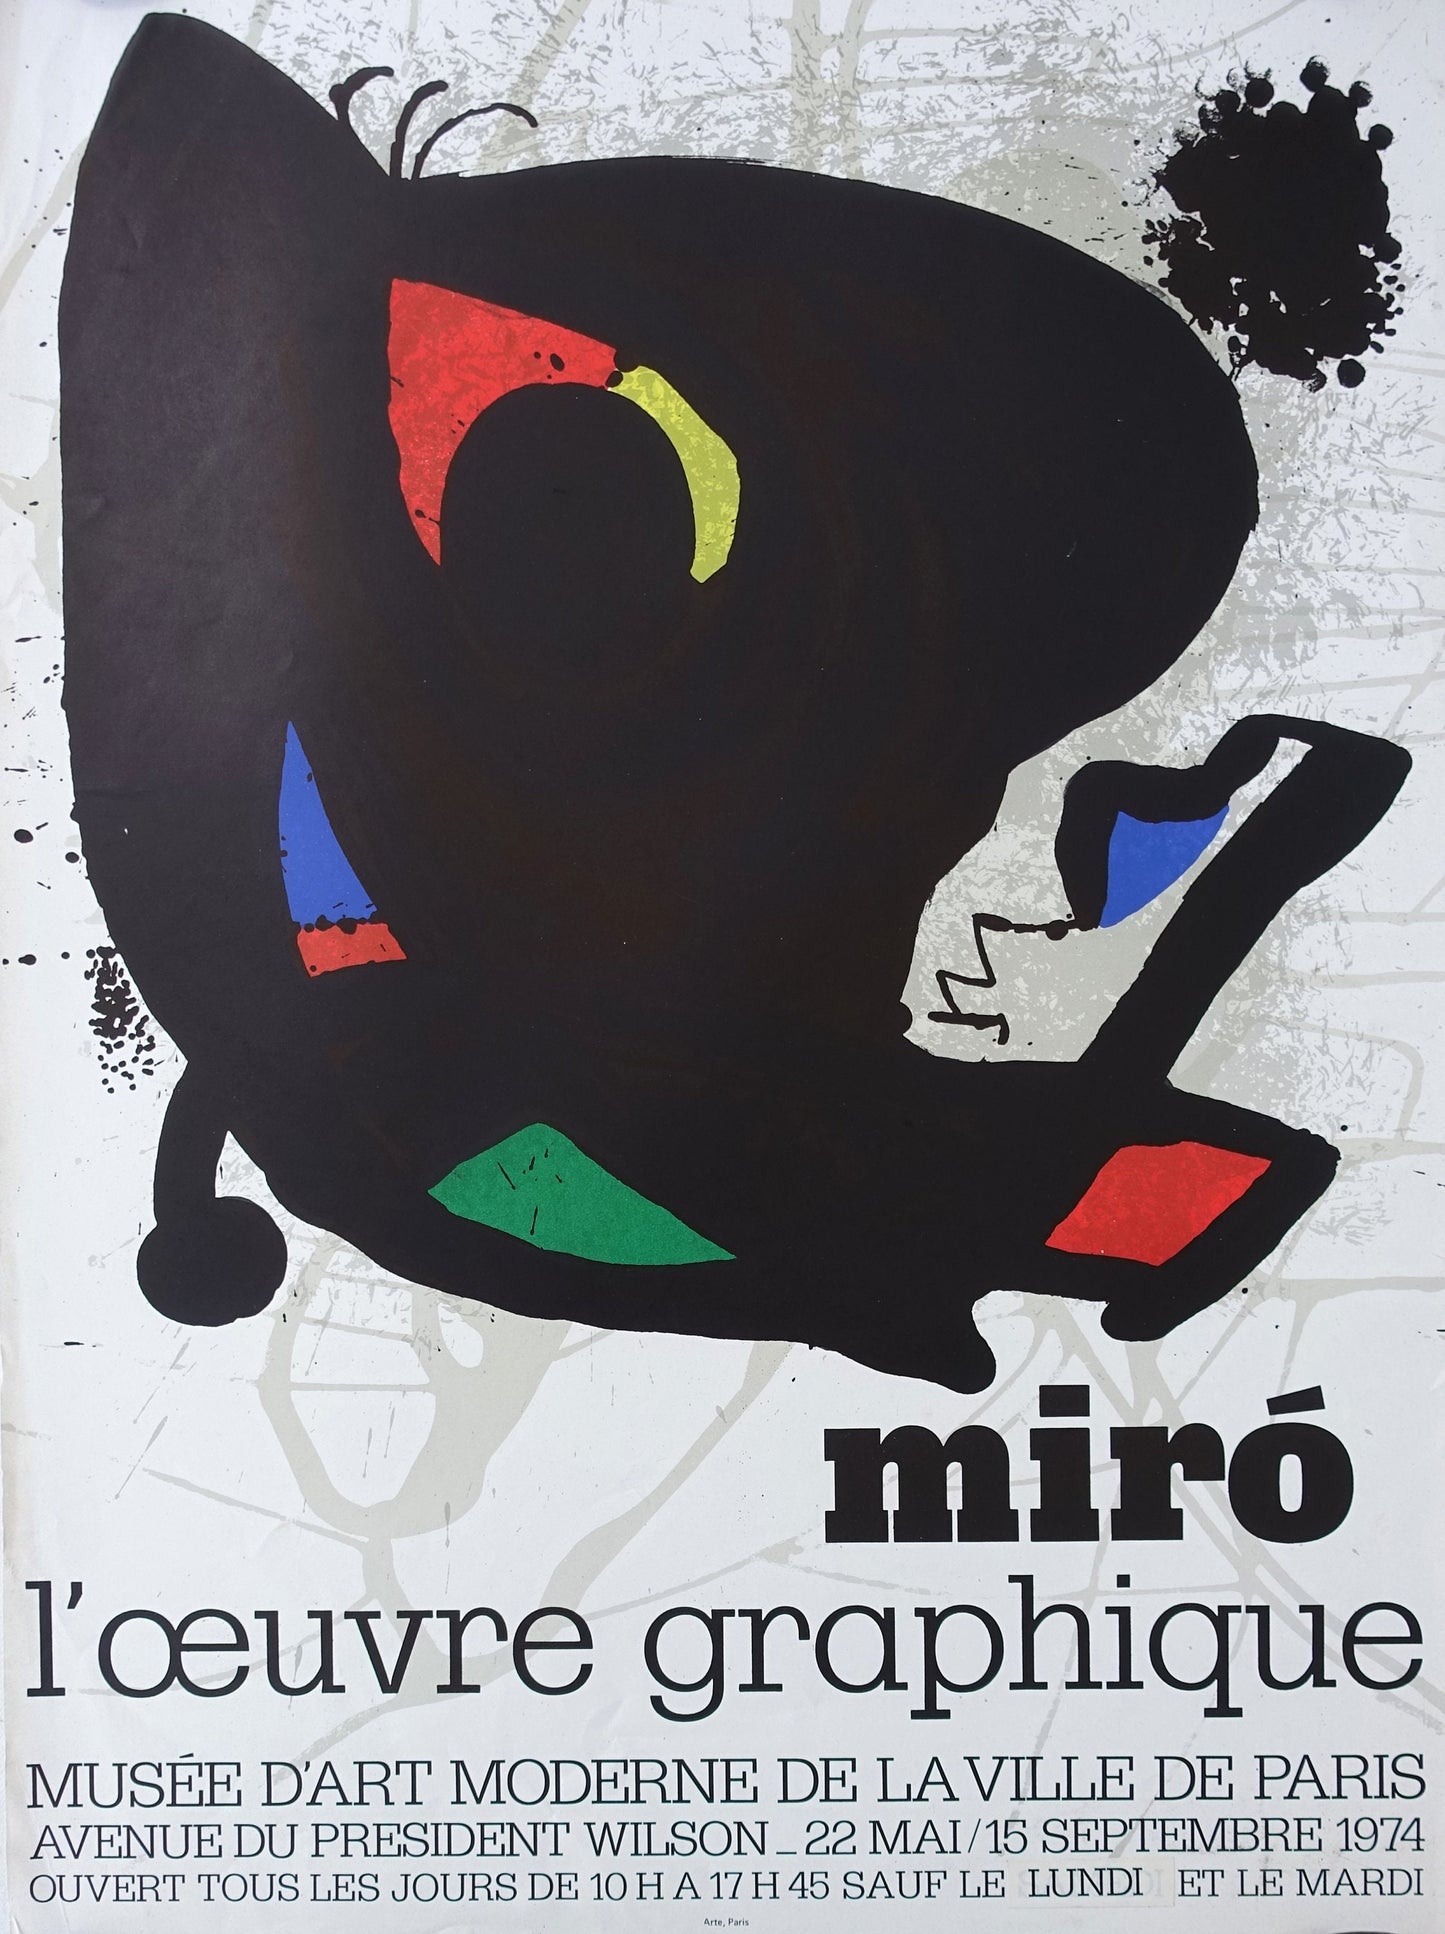 1974 Miro Exhibition Poster Paris L'oevre Graphique - Original Vintage Poster